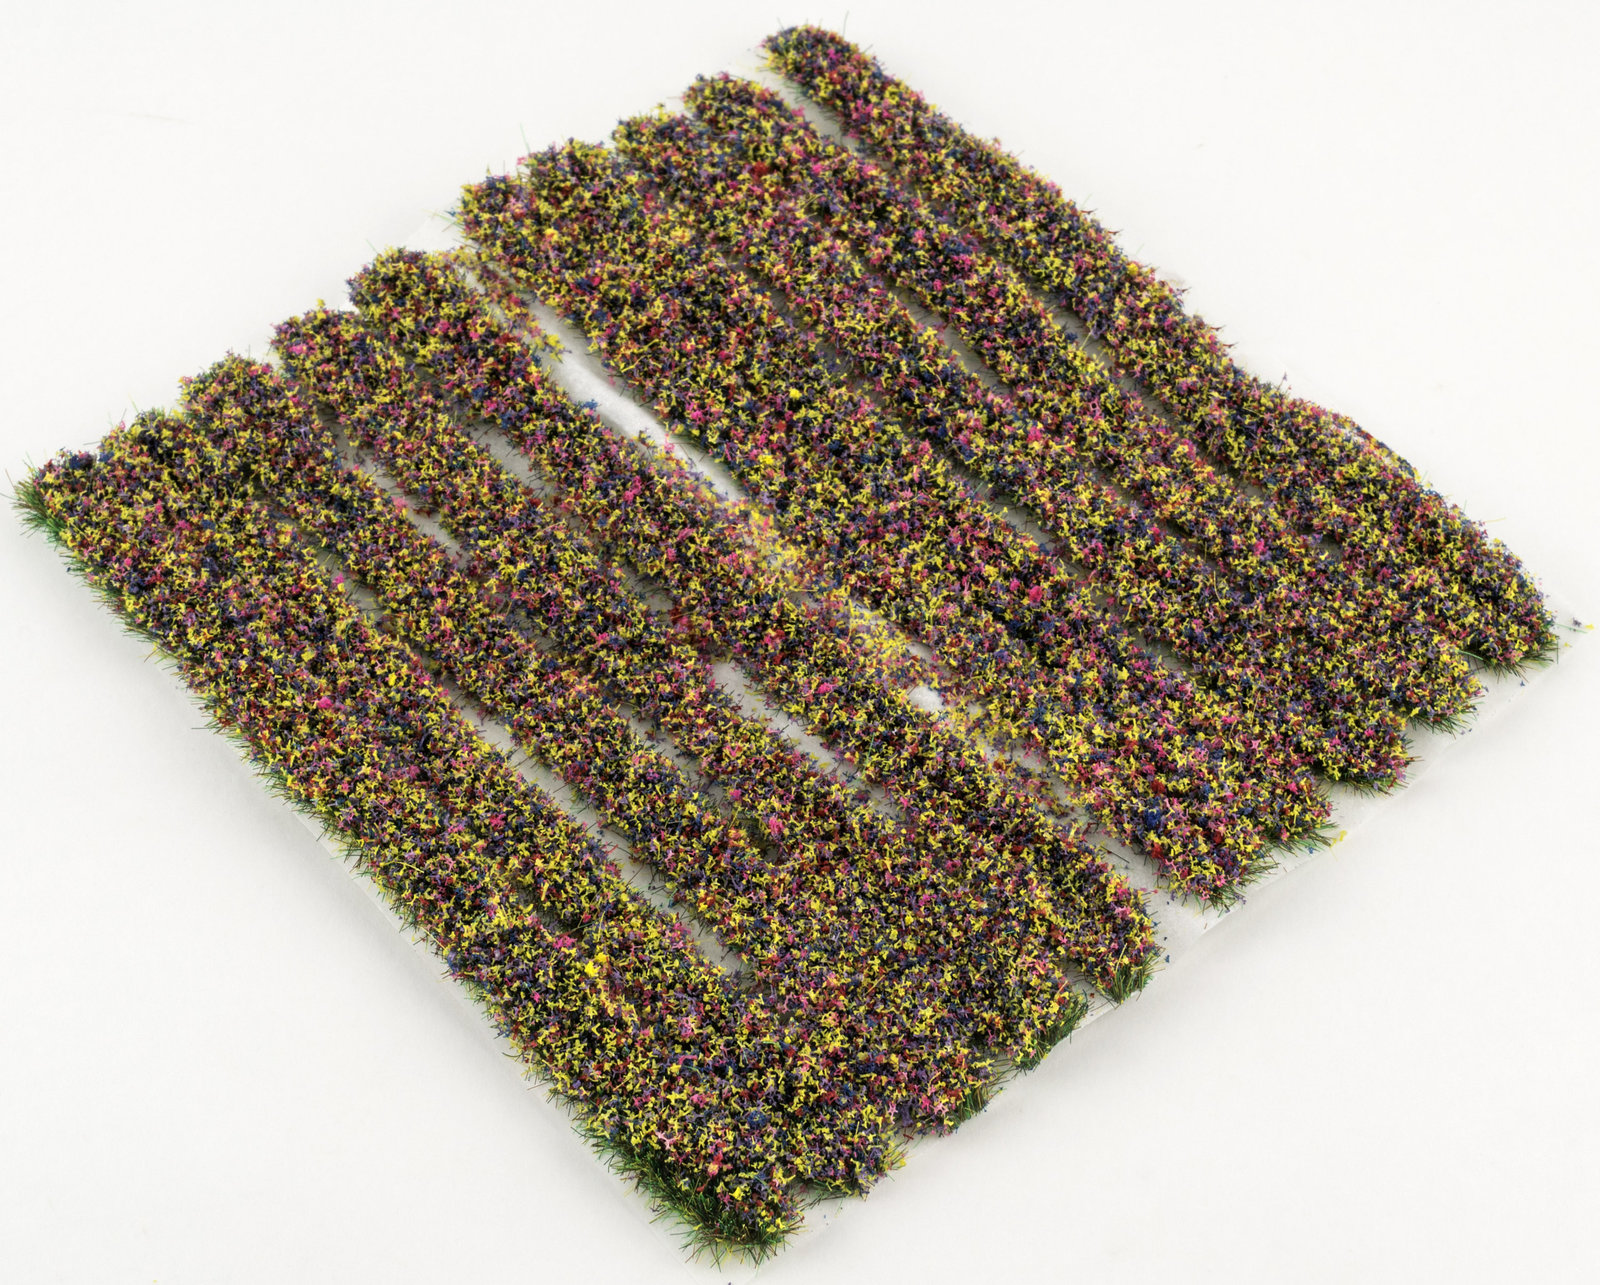 4mm Mixed Flower Static Grass Strips x 10 by WWS - Model Railway Diorama Scenery